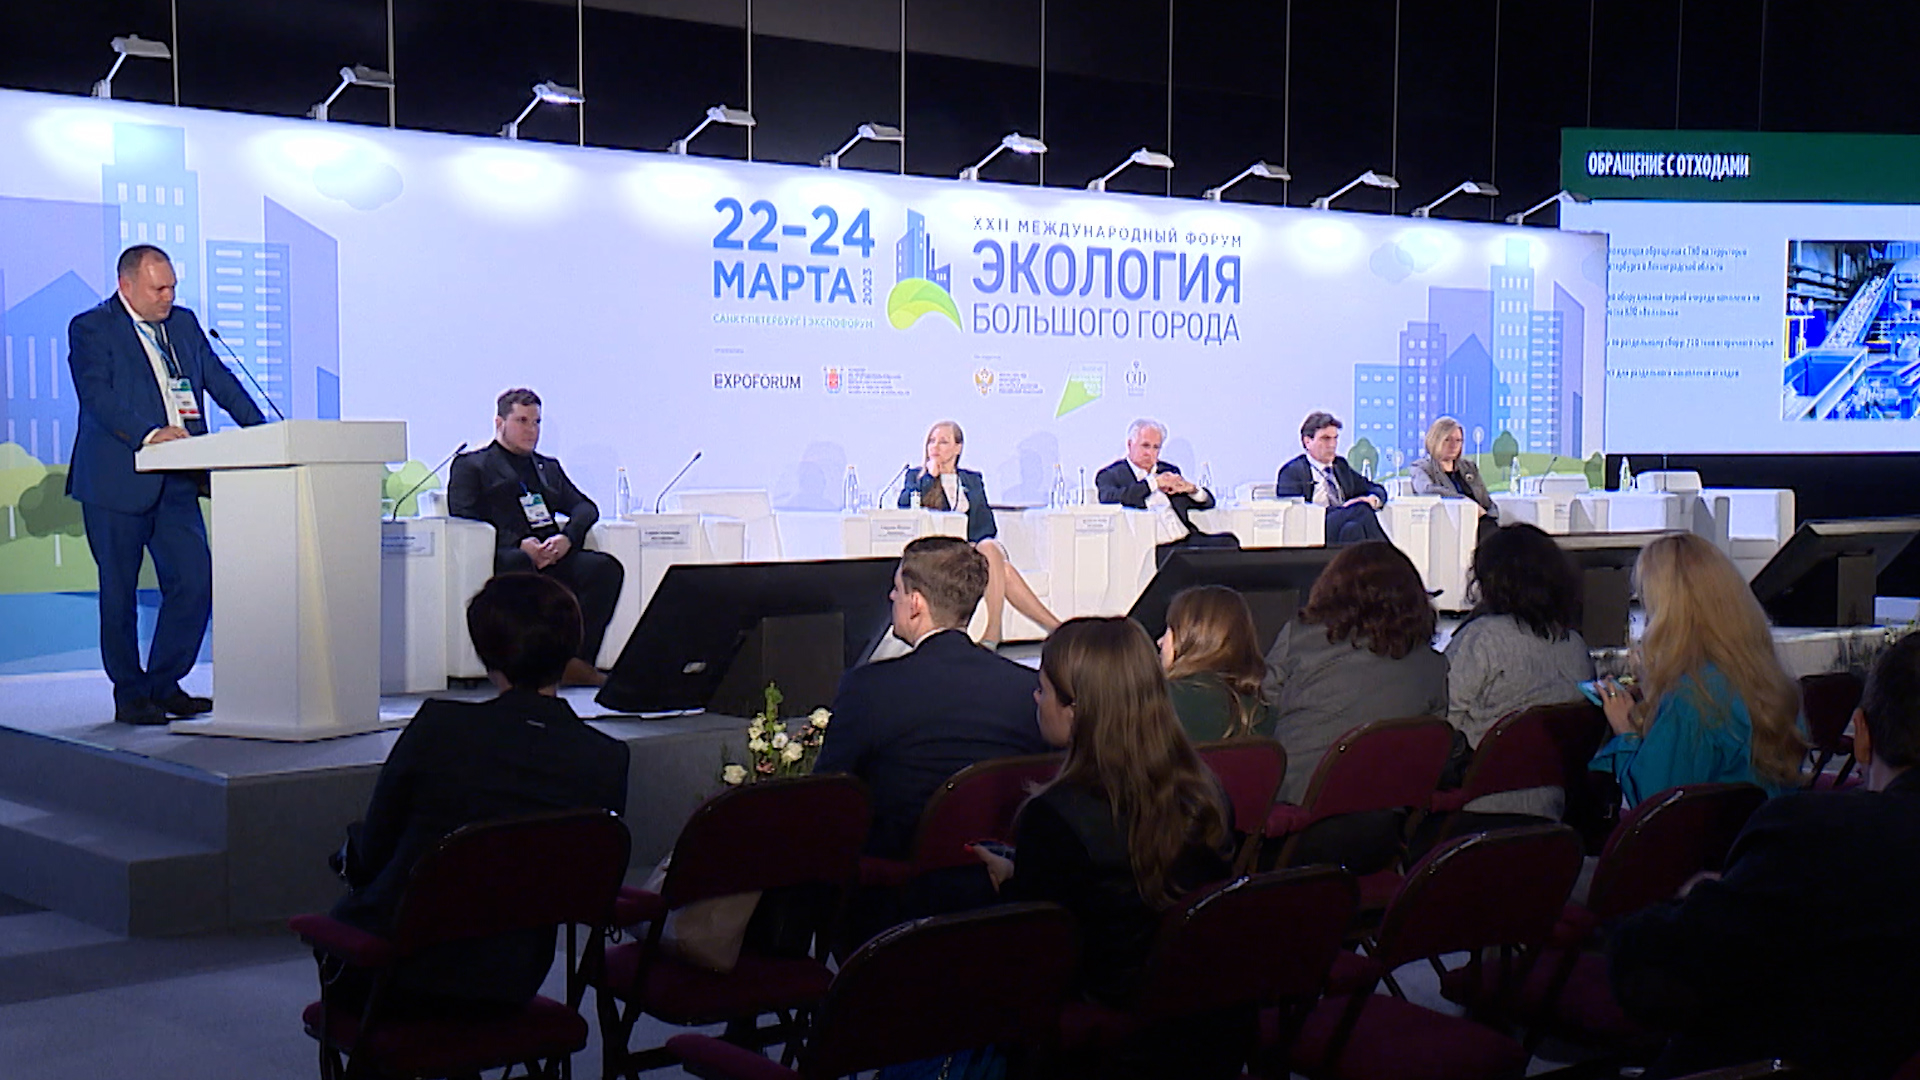 В Петербурге стартовал XXII международный форум «Экология большого города»